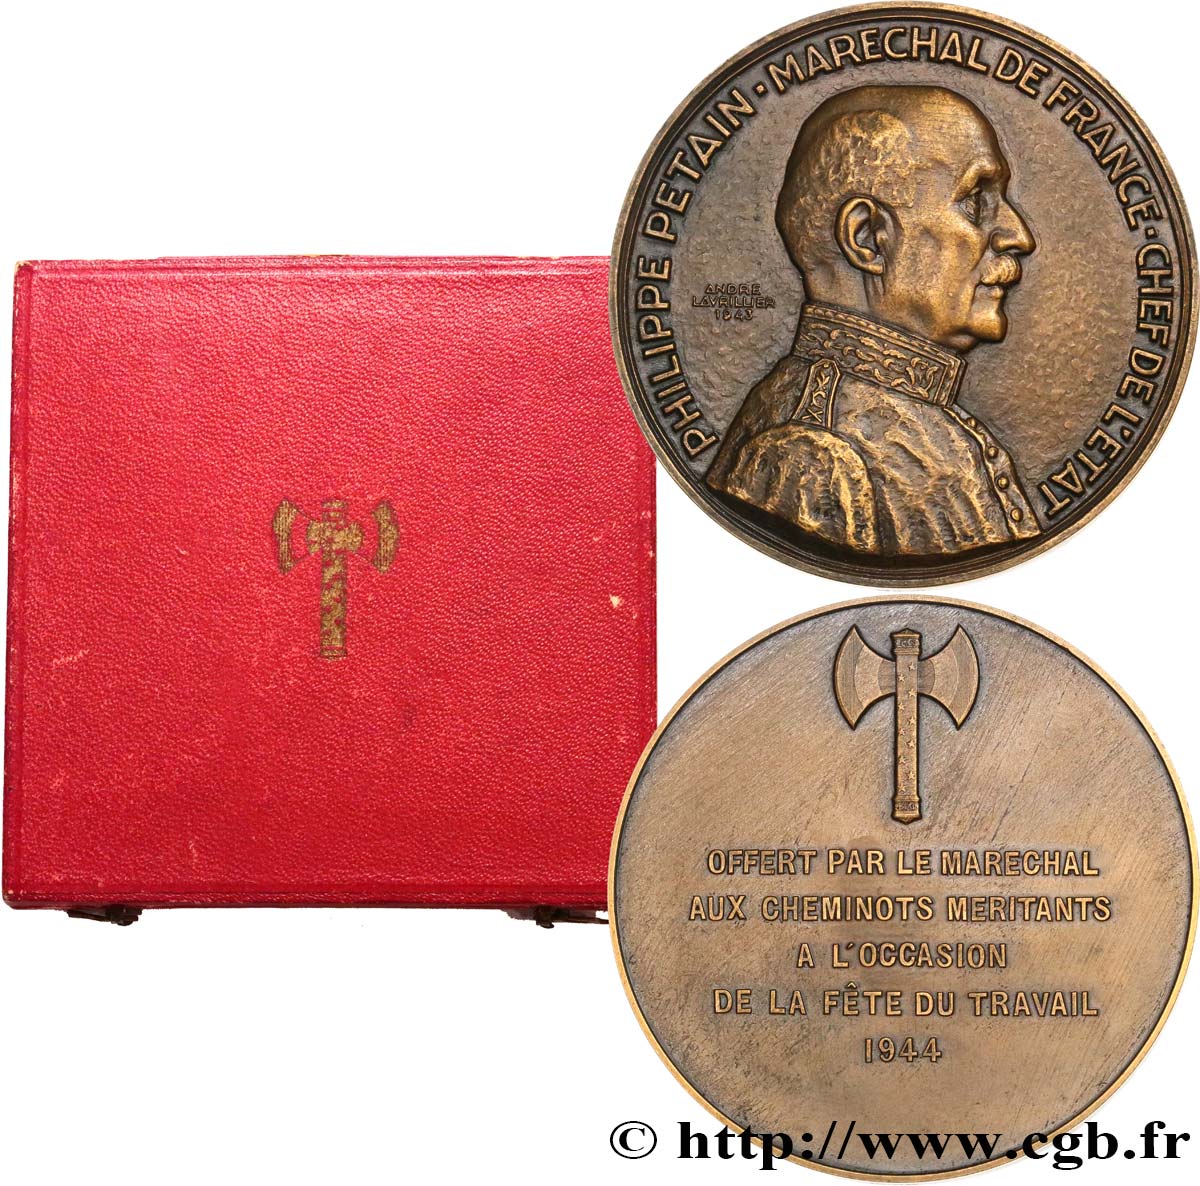 ÉTAT FRANÇAIS Médaille, Maréchal Pétain, offert aux cheminots SUP